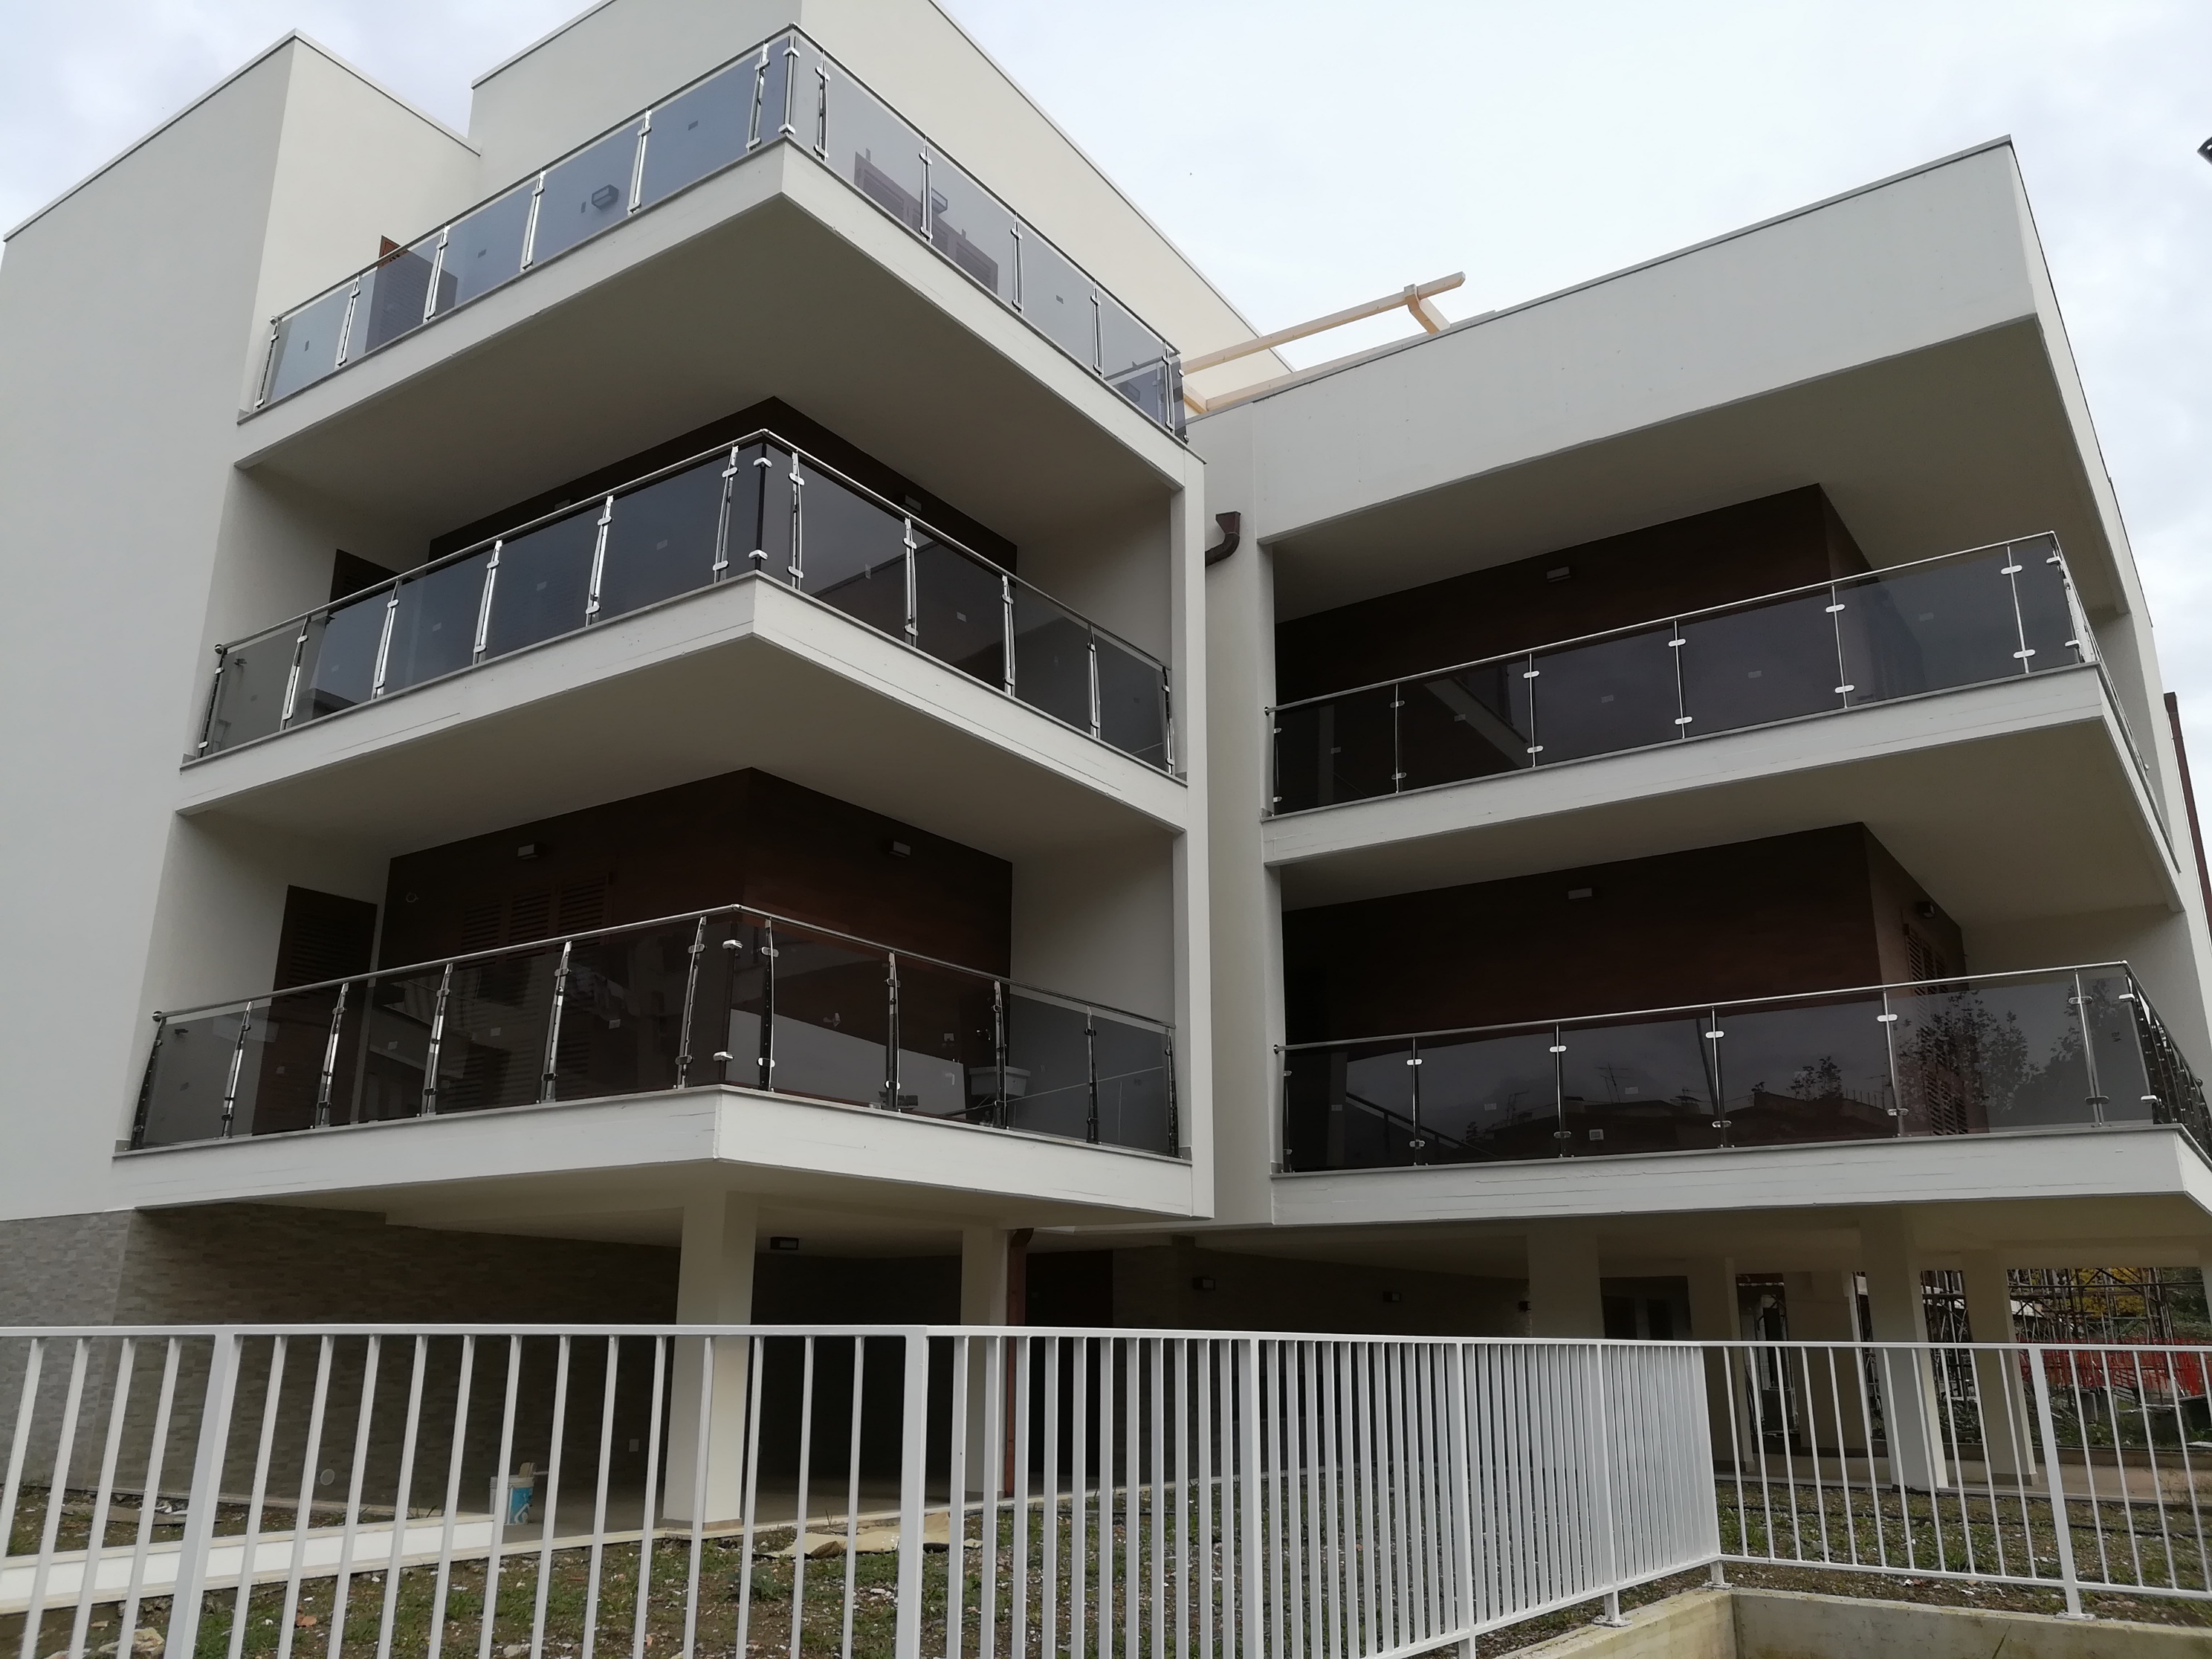 bonus facciate 2021 balconi ringhiere parapetti